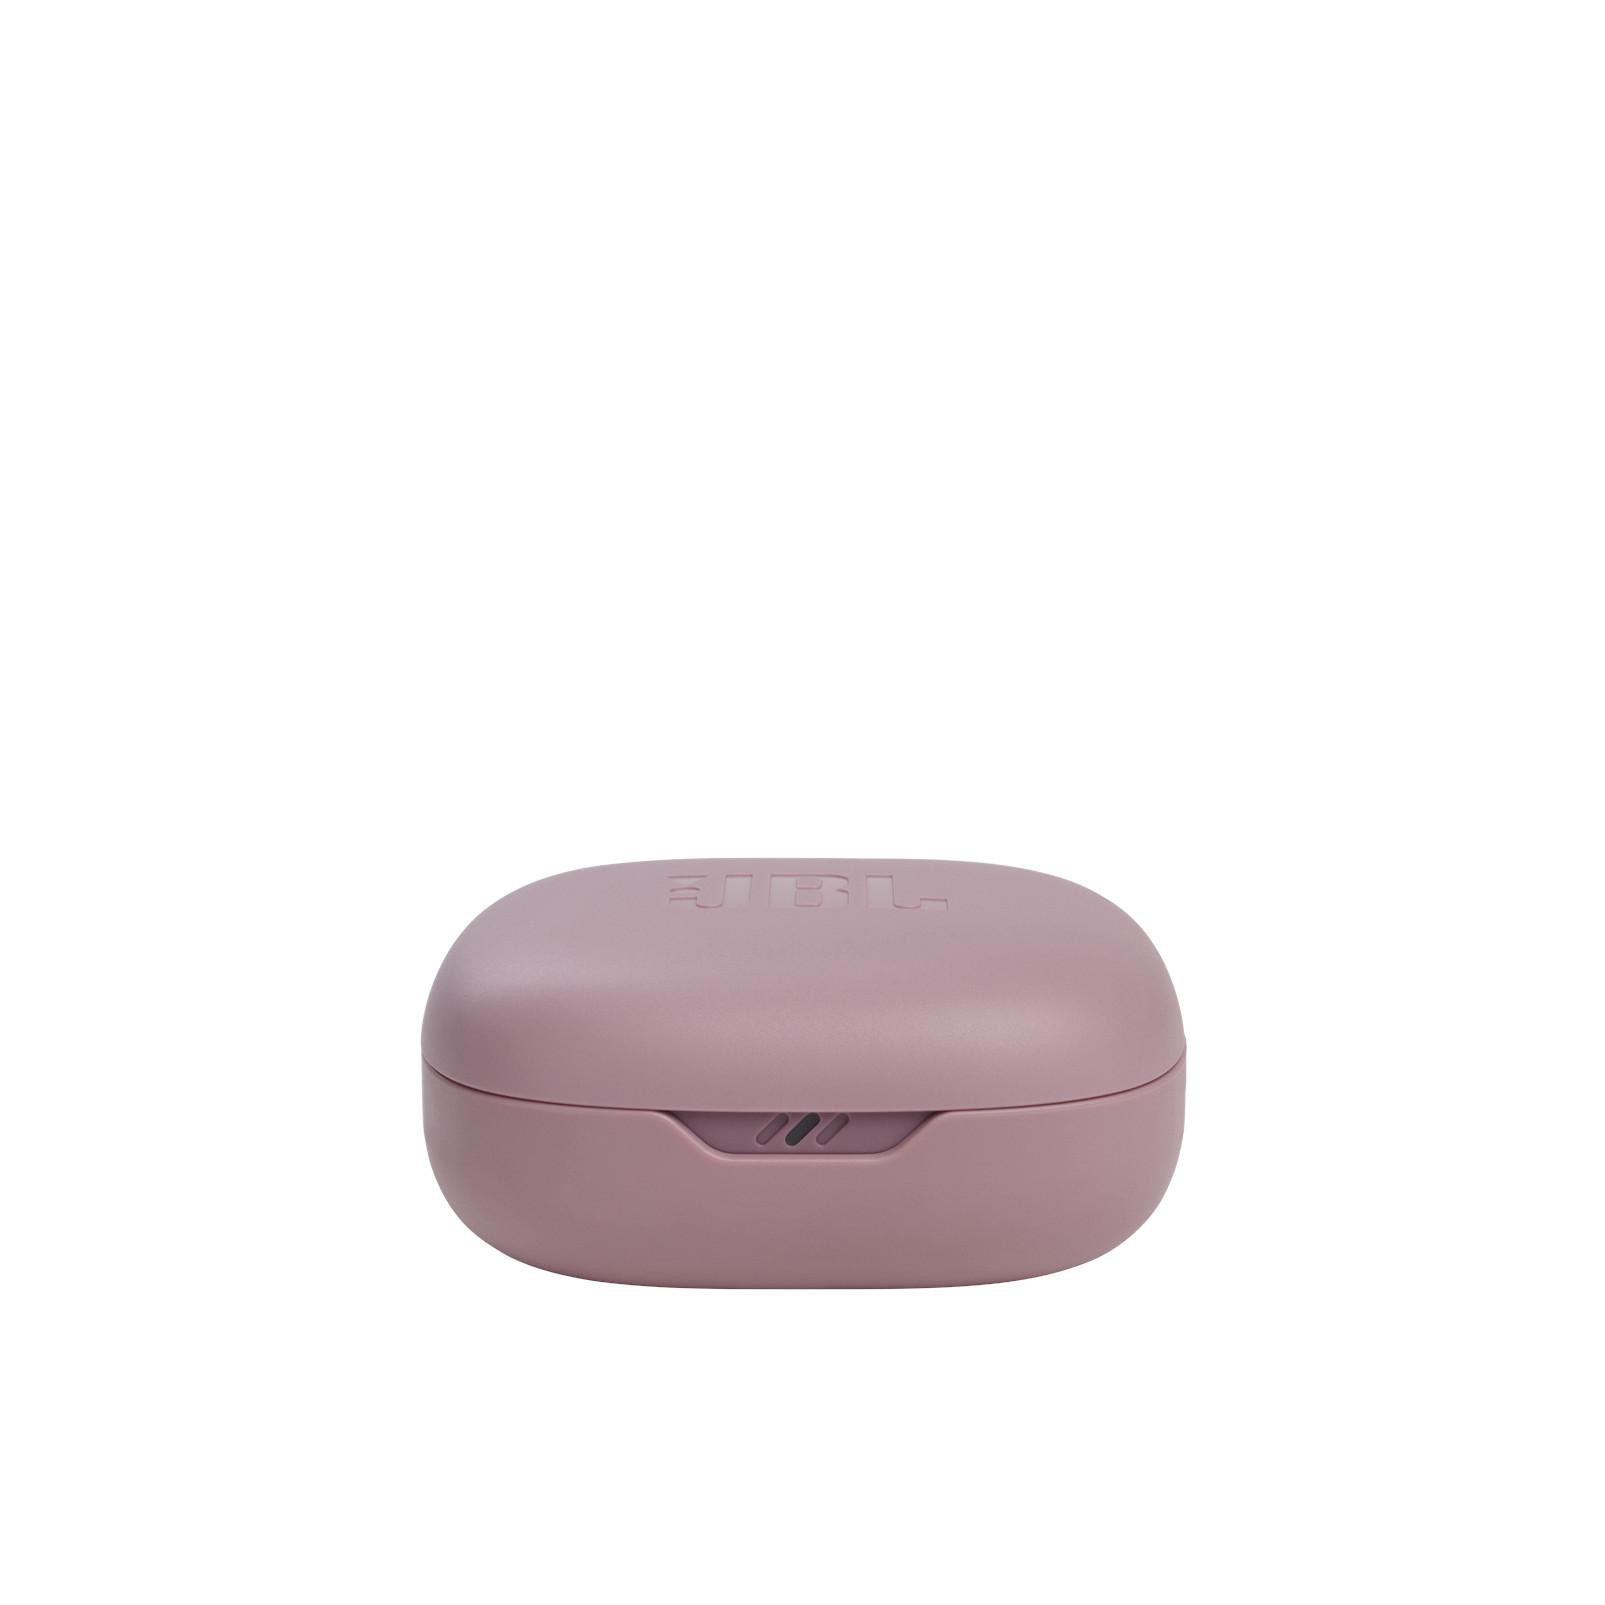 Kopfhörer Vibe JBL Wireless, 300 True In-ear Bluetooth Pink